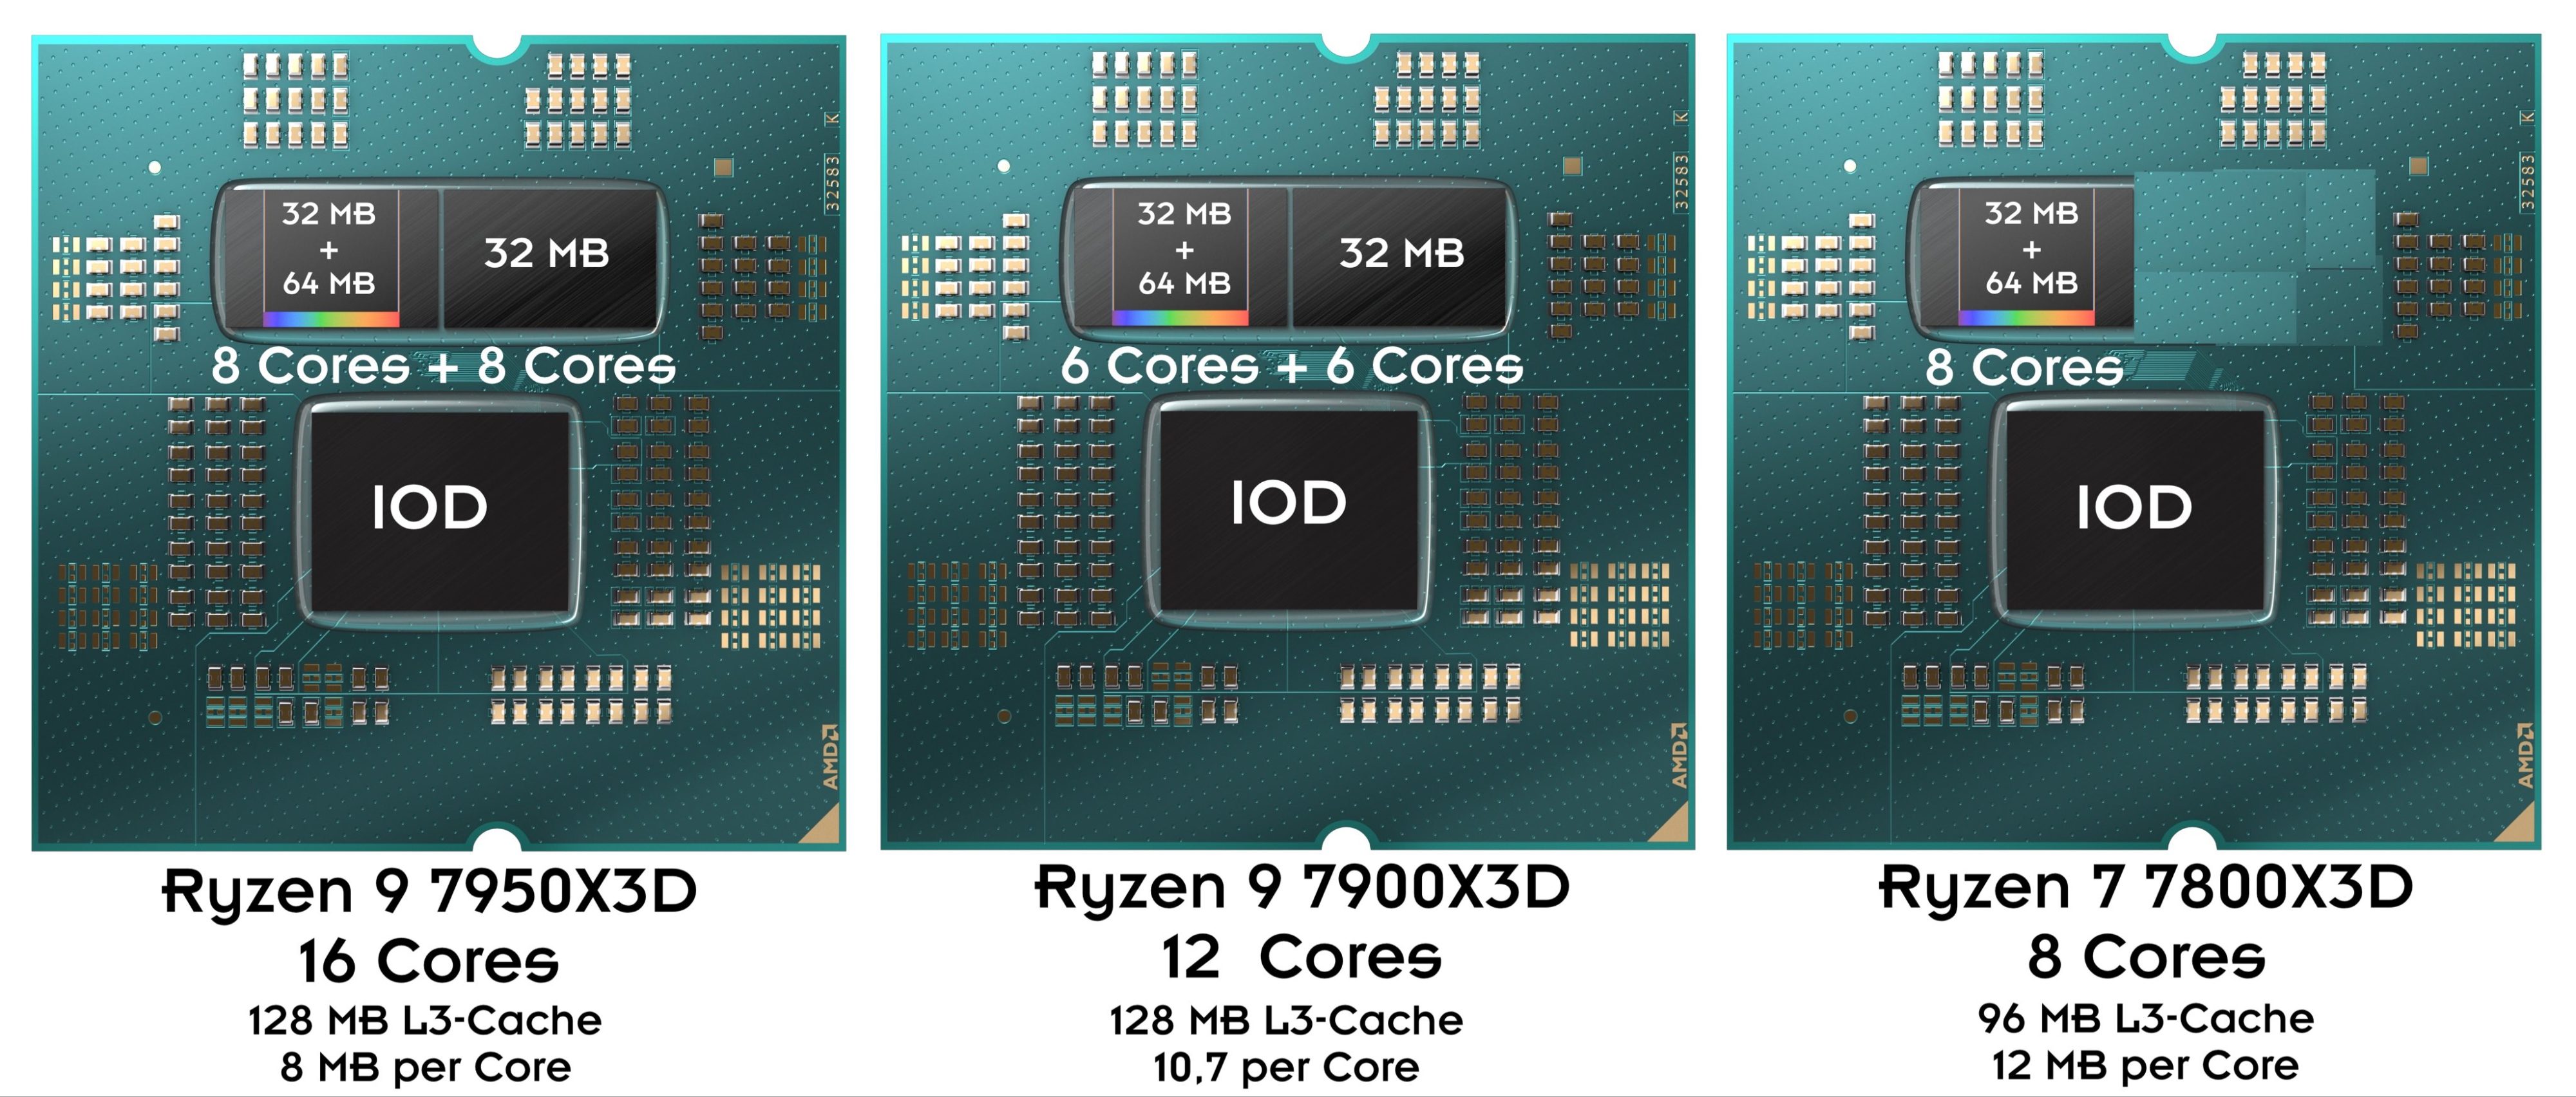 AMD Ryzen 7 7800X3D, Ryzen 9 7900X3D and Ryzen 9 7950X3D finally